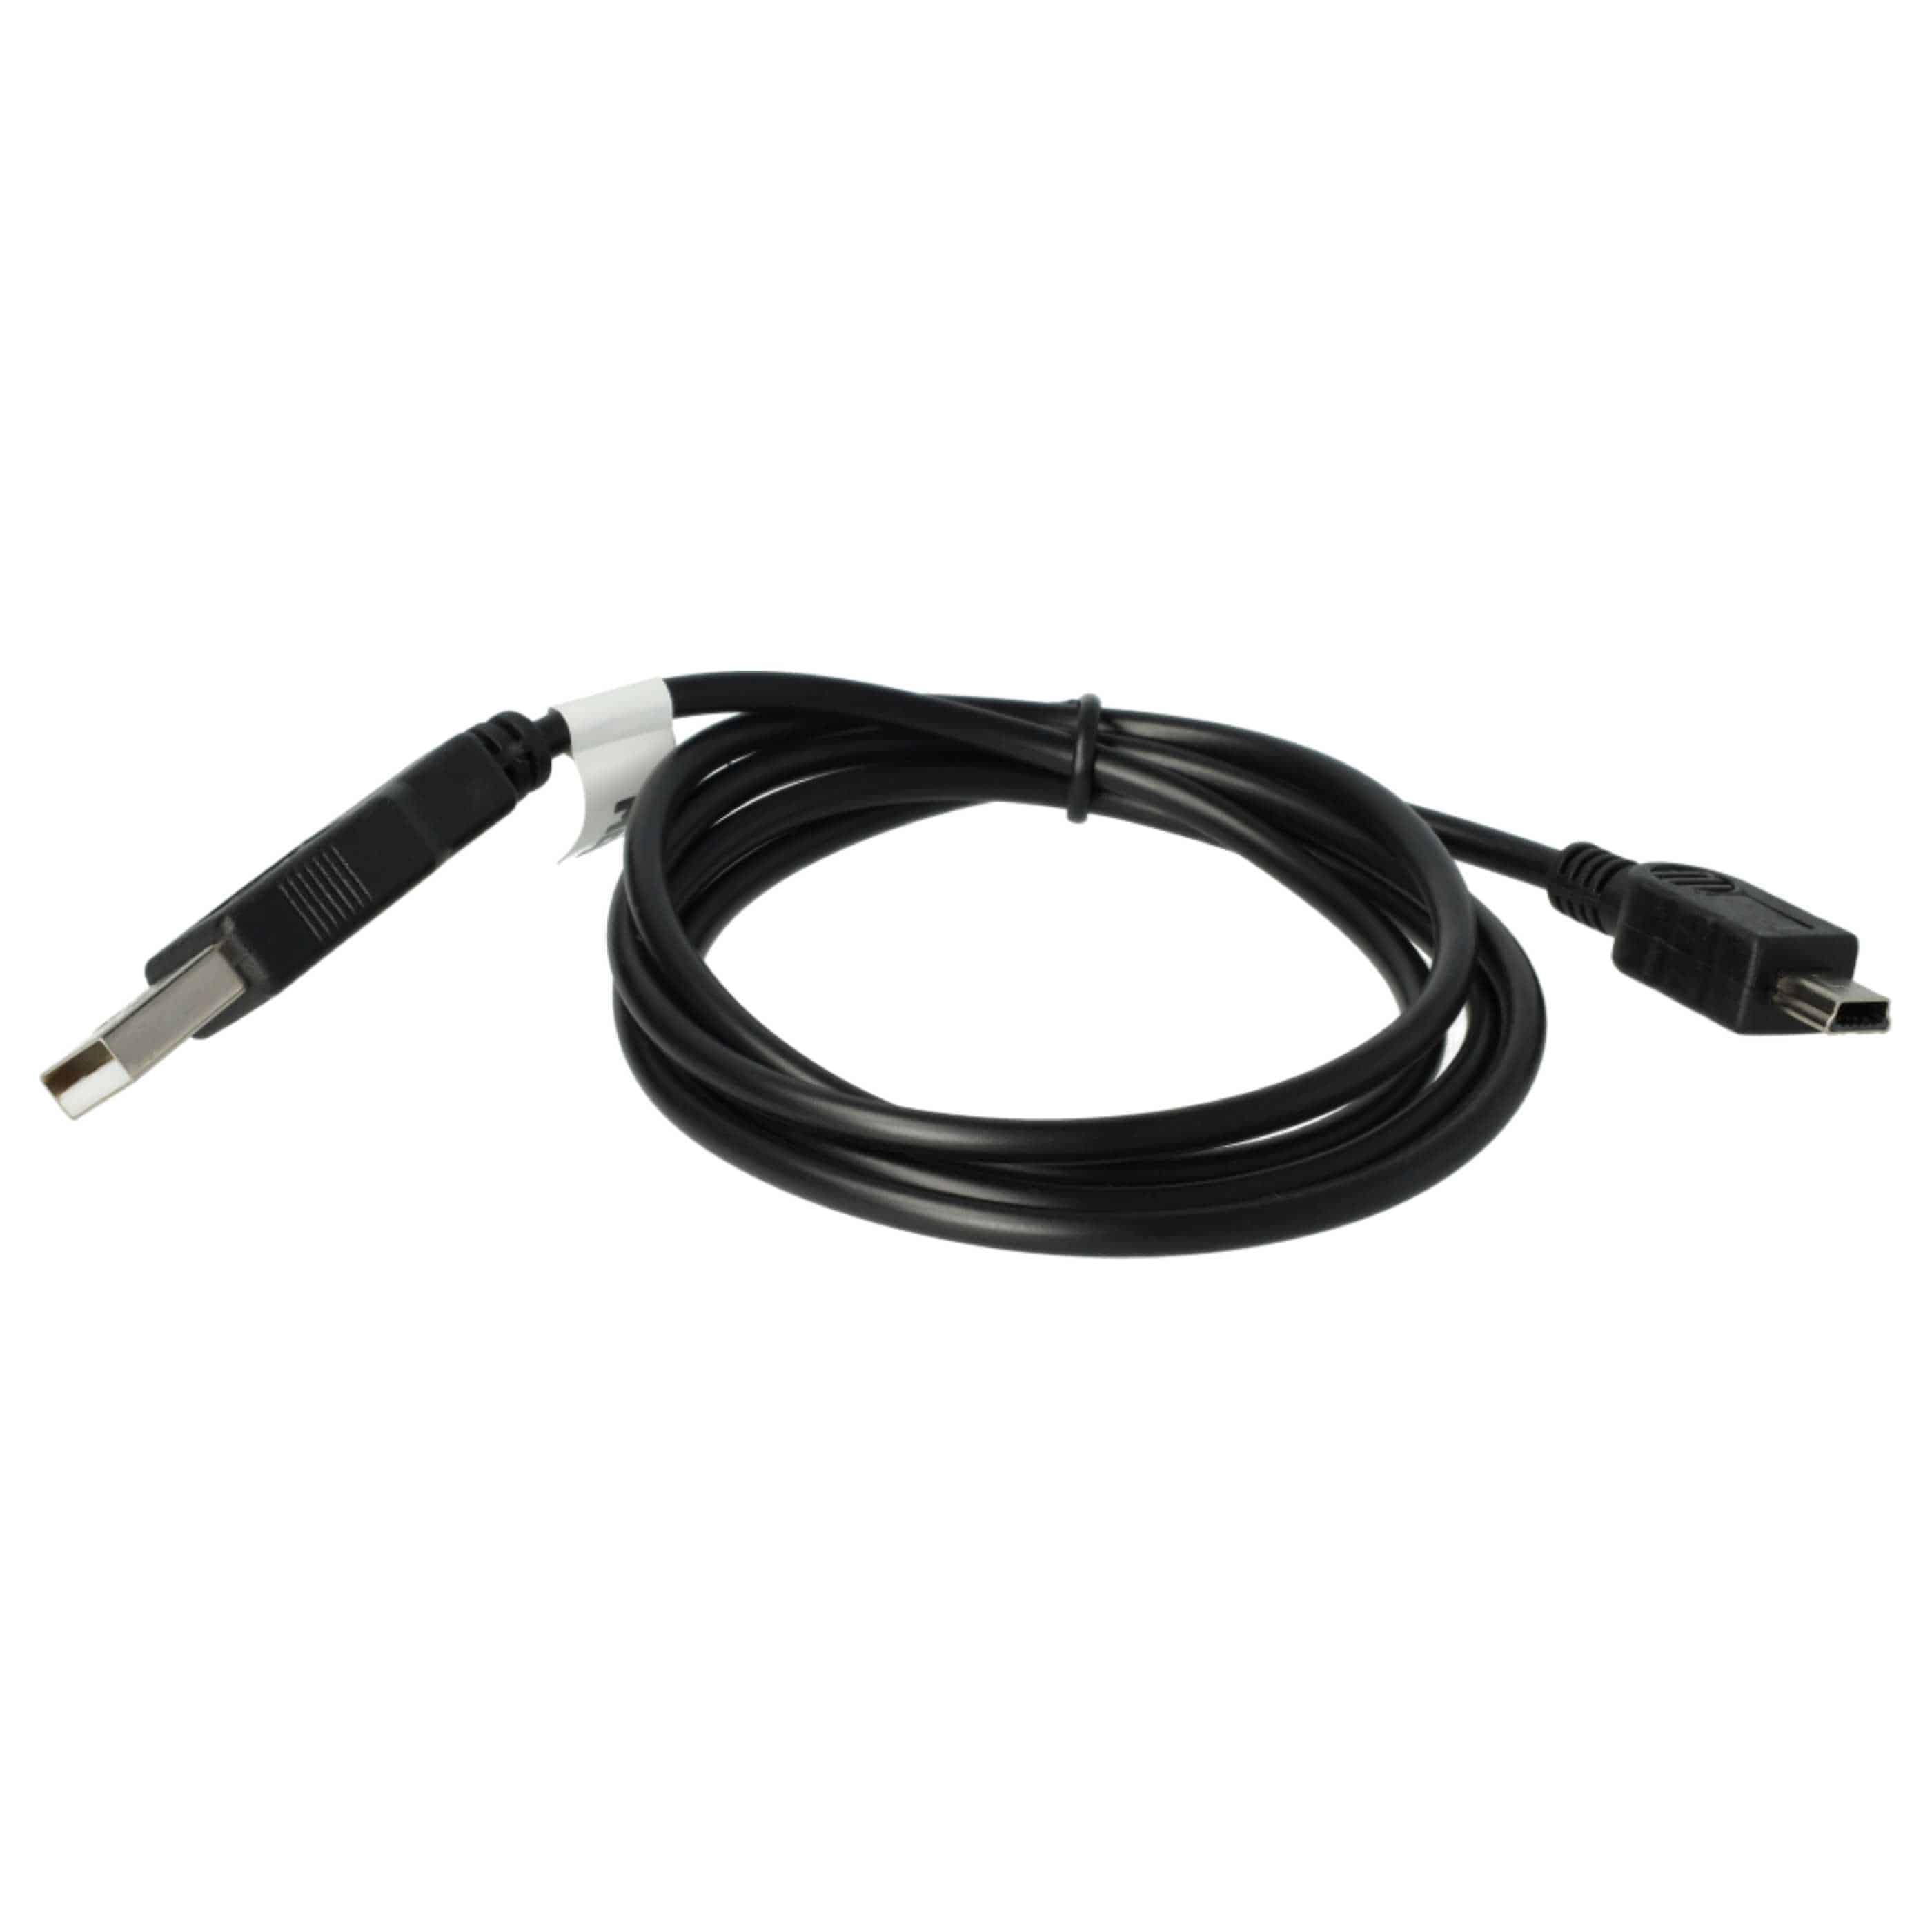 Câble de données USB pour téléphone portable Nokia E51 - câble de chargement 2en1, 100cm